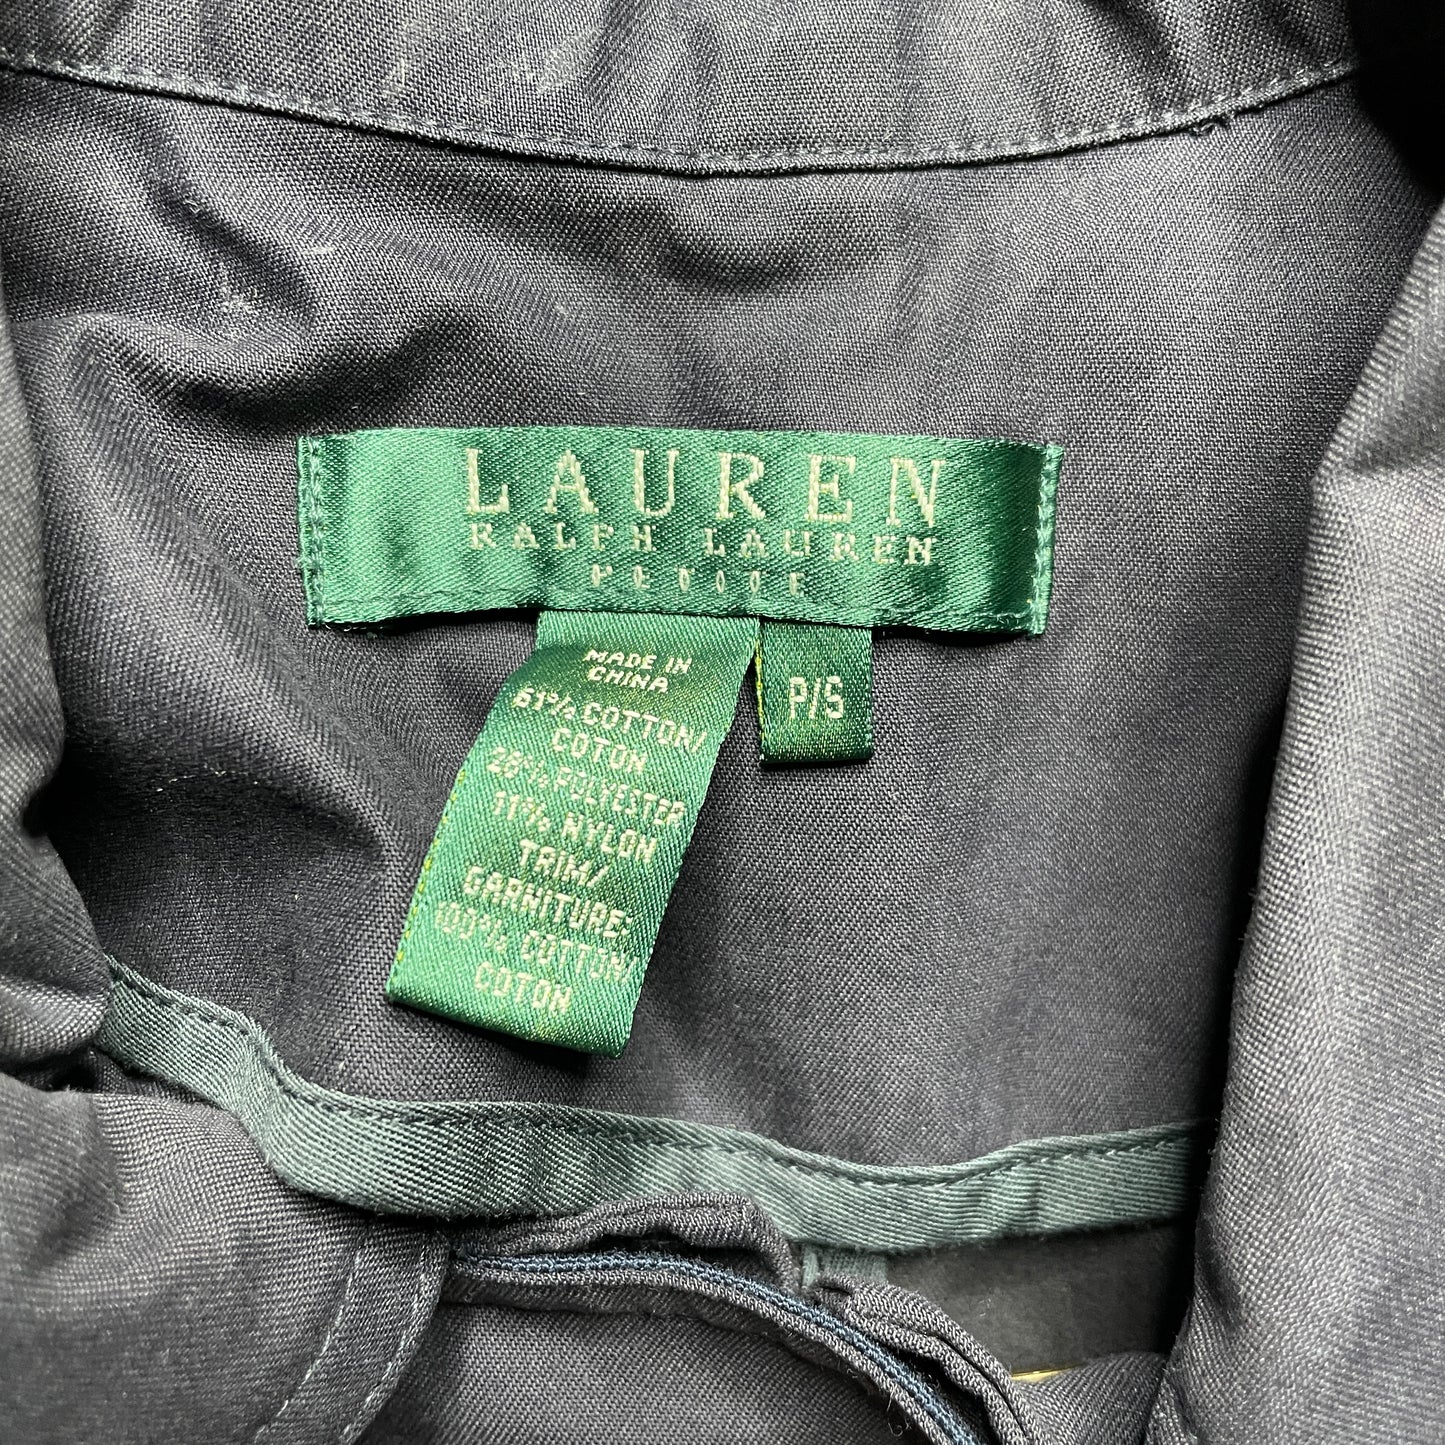 Women's Vintage Lauren By Ralph Lauren Barn Coat in Navy SZ Small